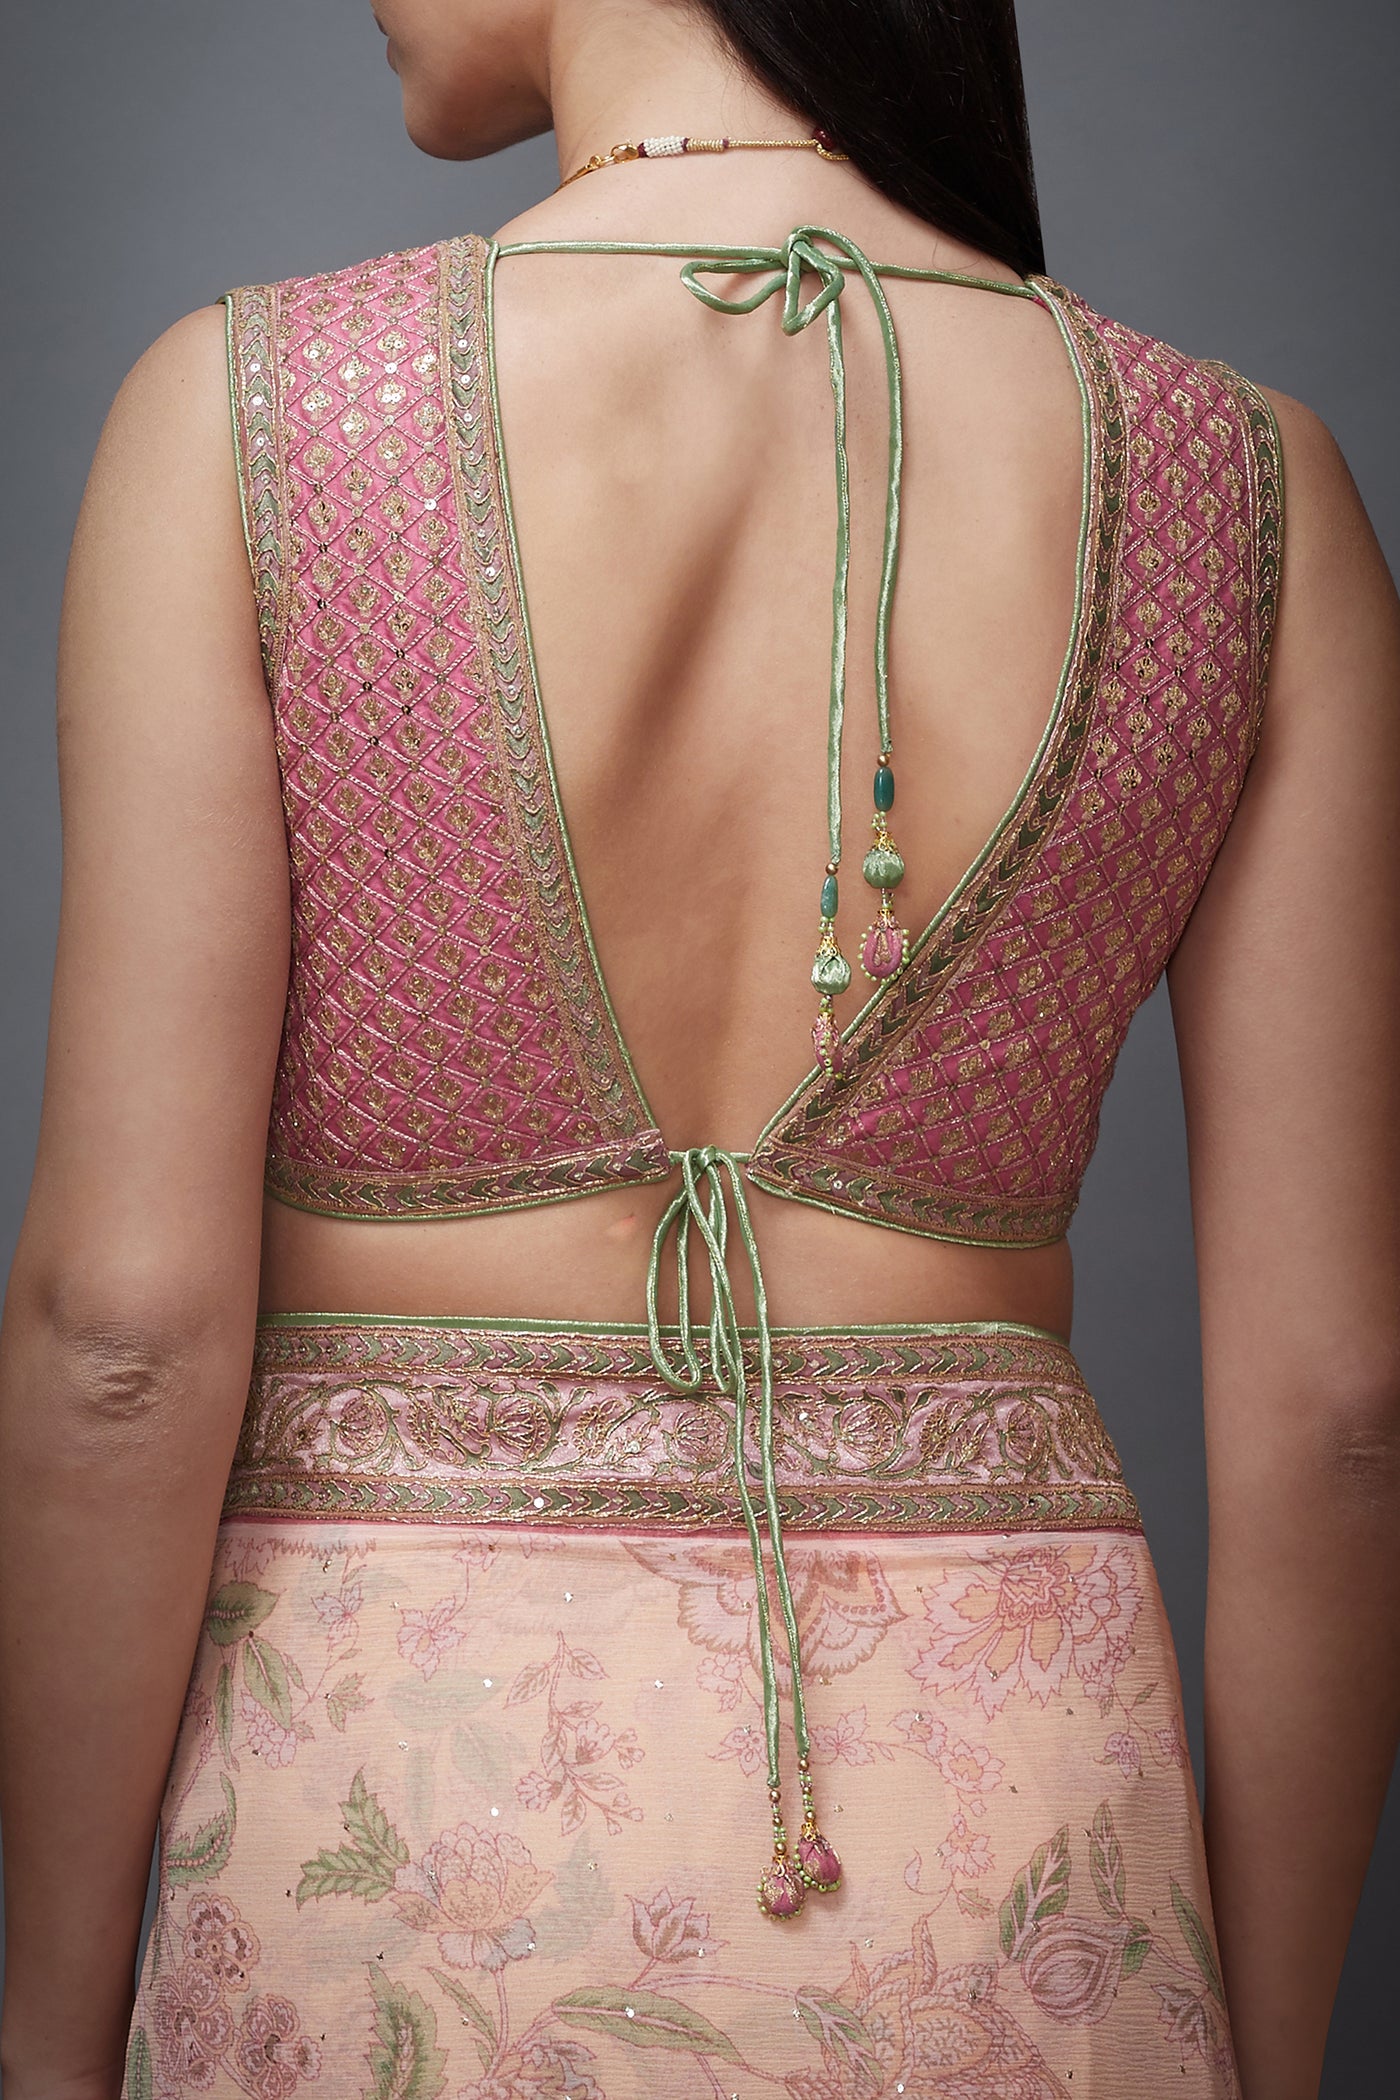 Ri Ritu Kumar V neck sleeveless stitched blouse with saree pink festive wedding bridal online shopping melange singapore indian designer wear